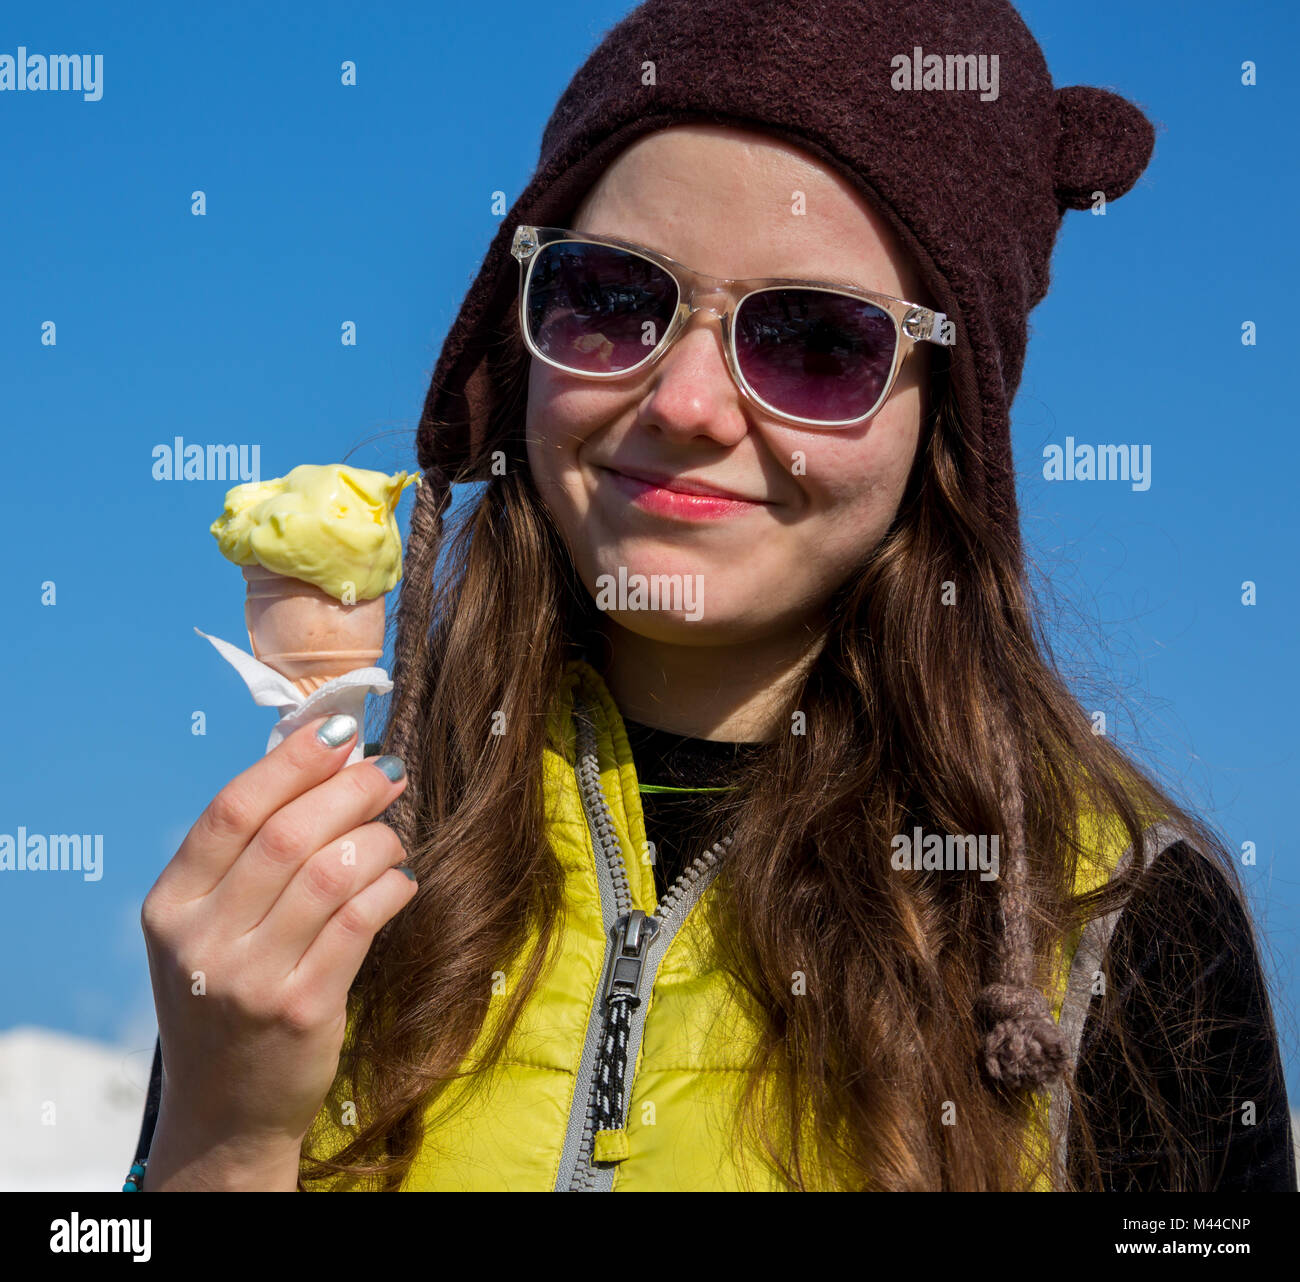 Gros plan extérieur fashion portrait of young girl crazy hipster la consommation de crème glacée en été quand il fait chaud en miroir rond lunettes de avoir l'amusement et la bonne humeur. Style tons filtres instagram Banque D'Images